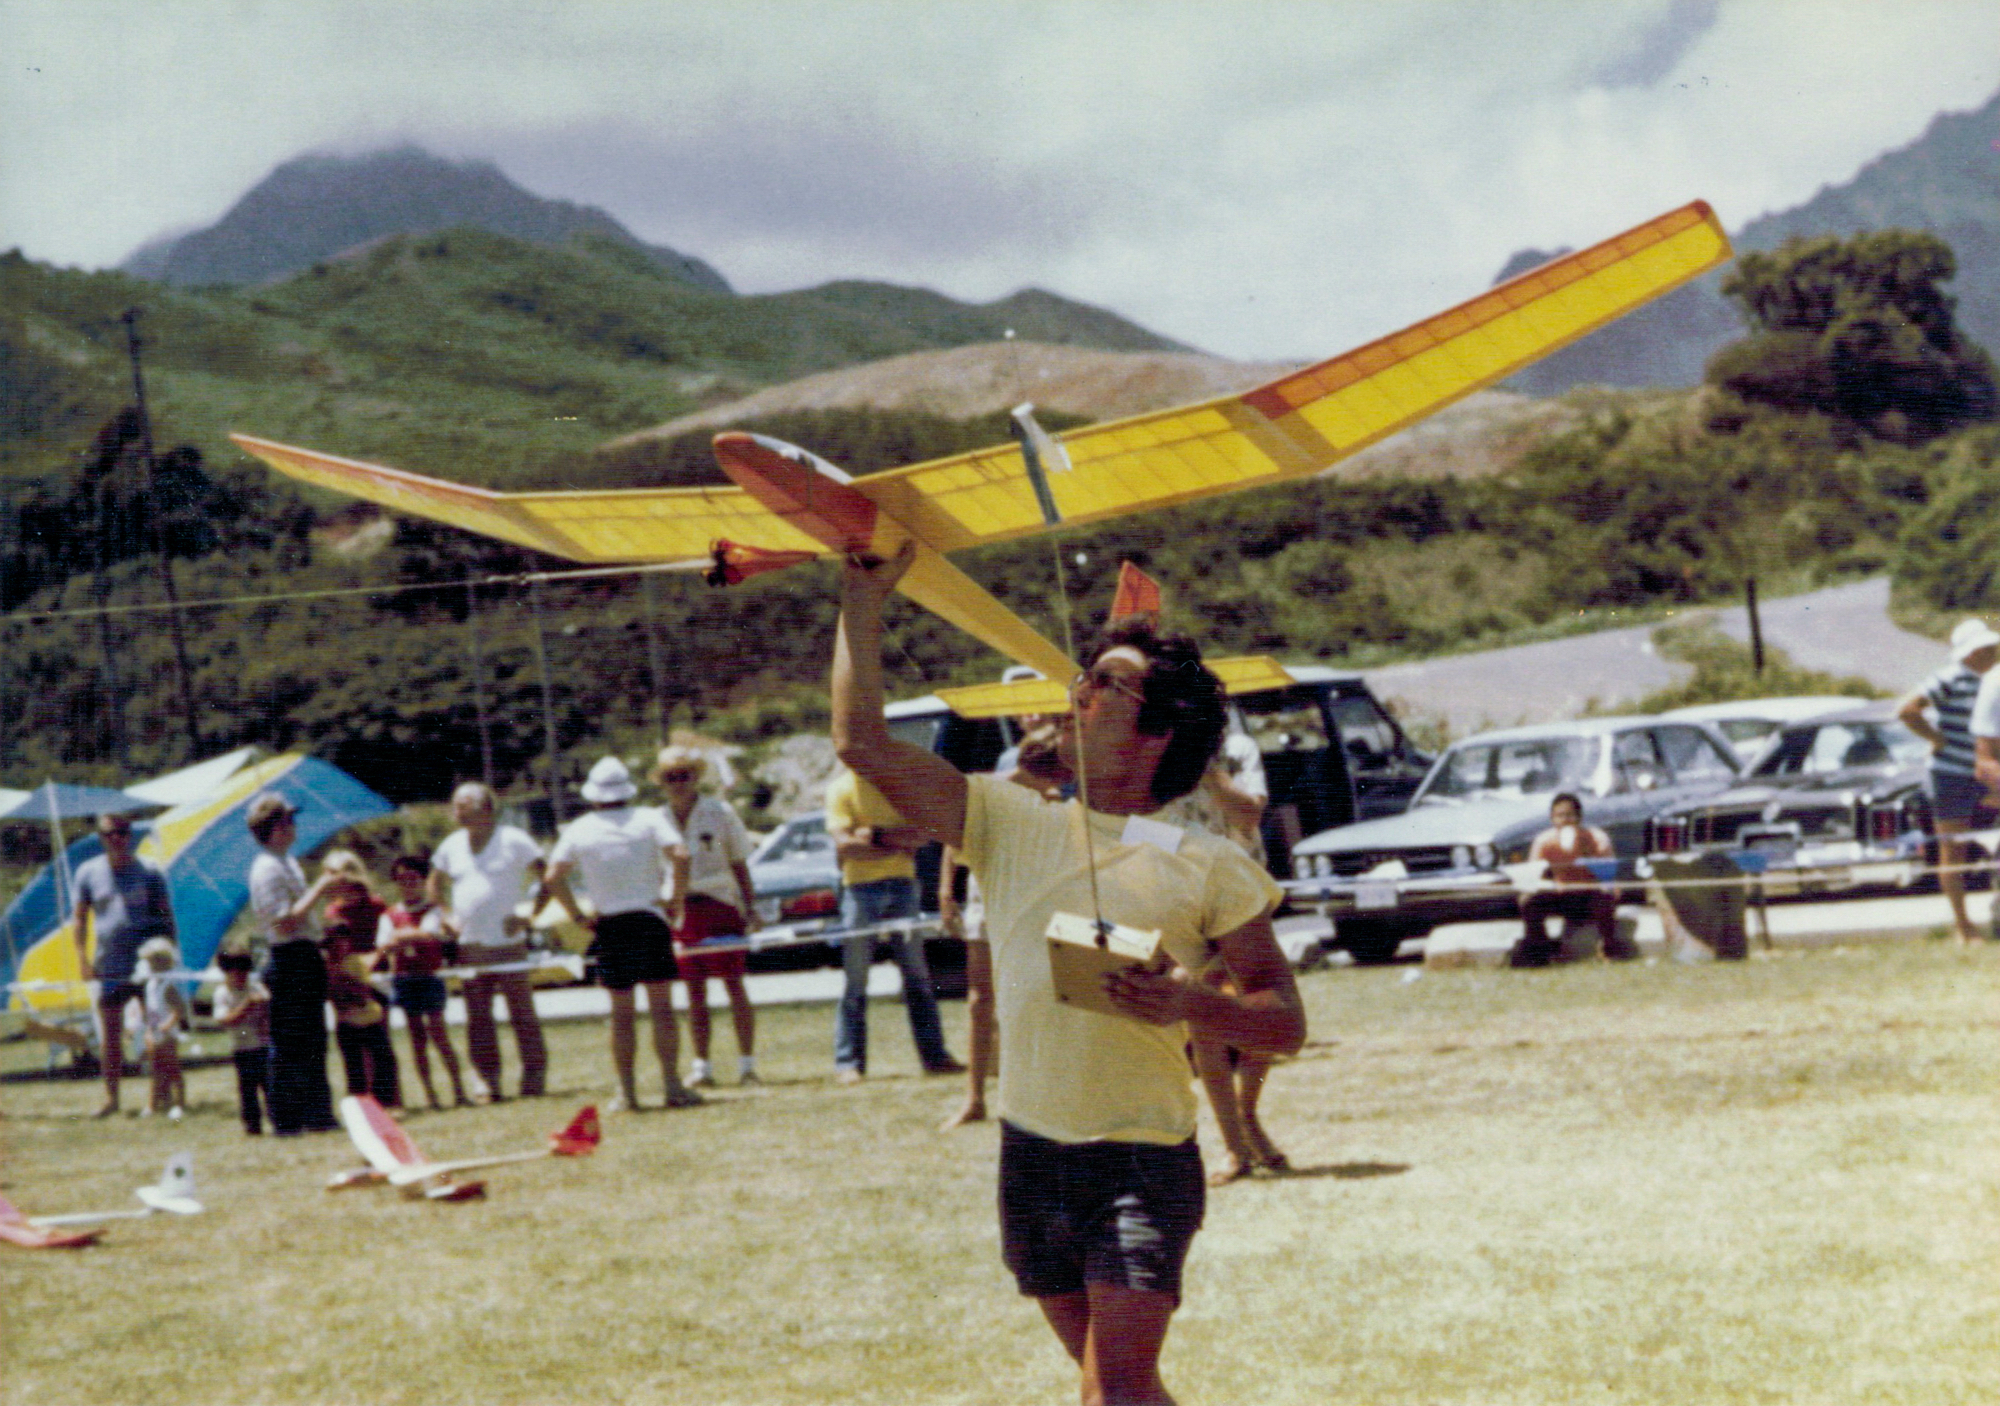 1970s - Dave Wartel with his Maestro Mk III sailplane